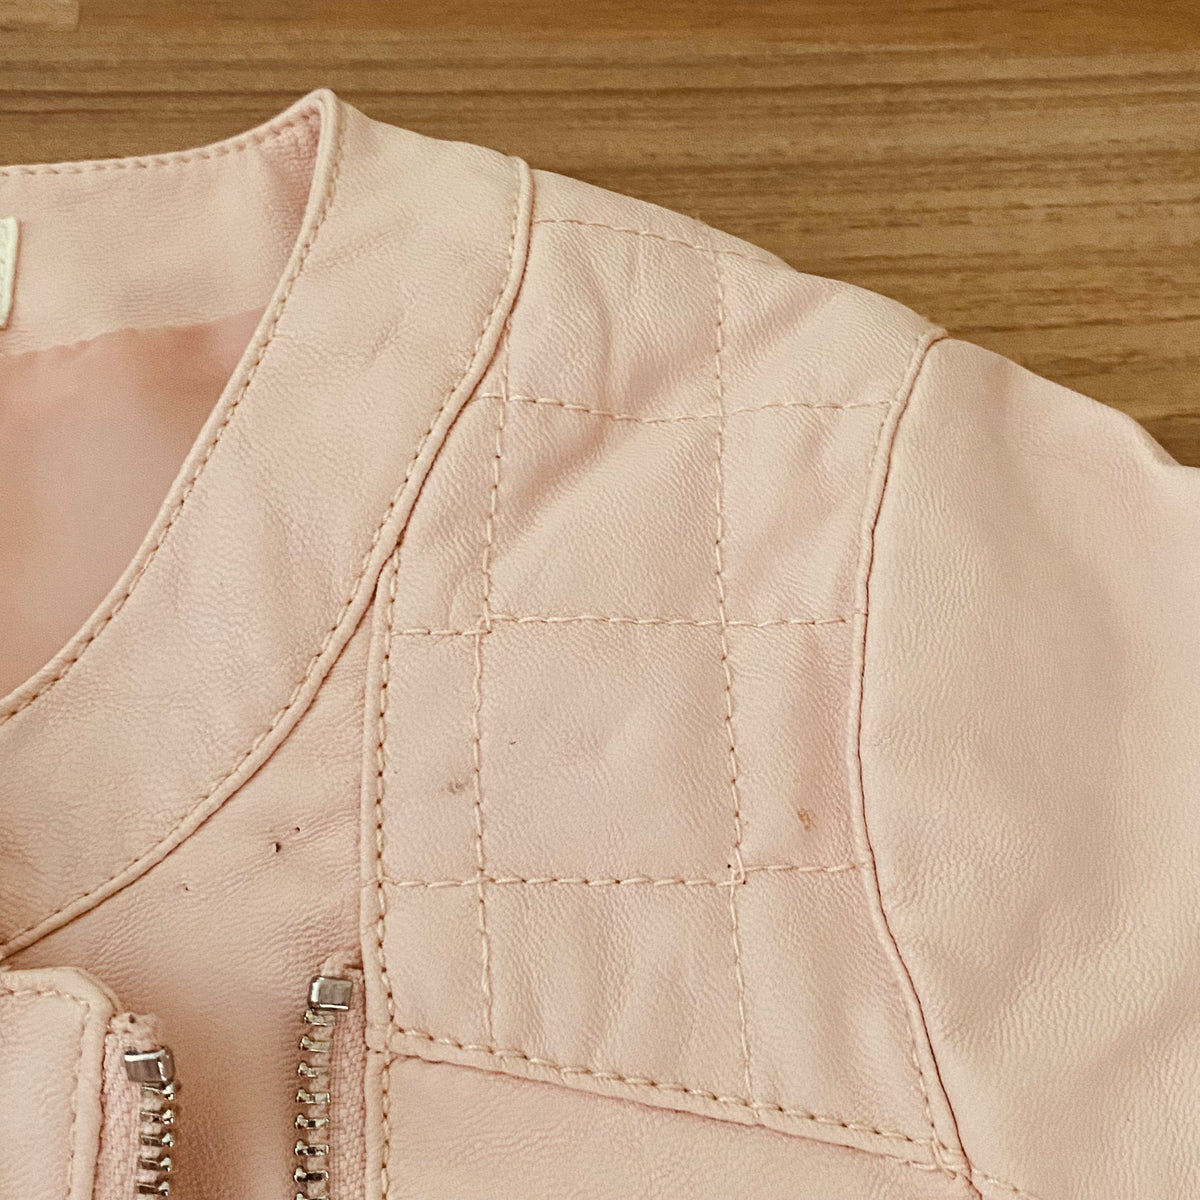 Full Zip Up Jacket (Girls Size 7-8)